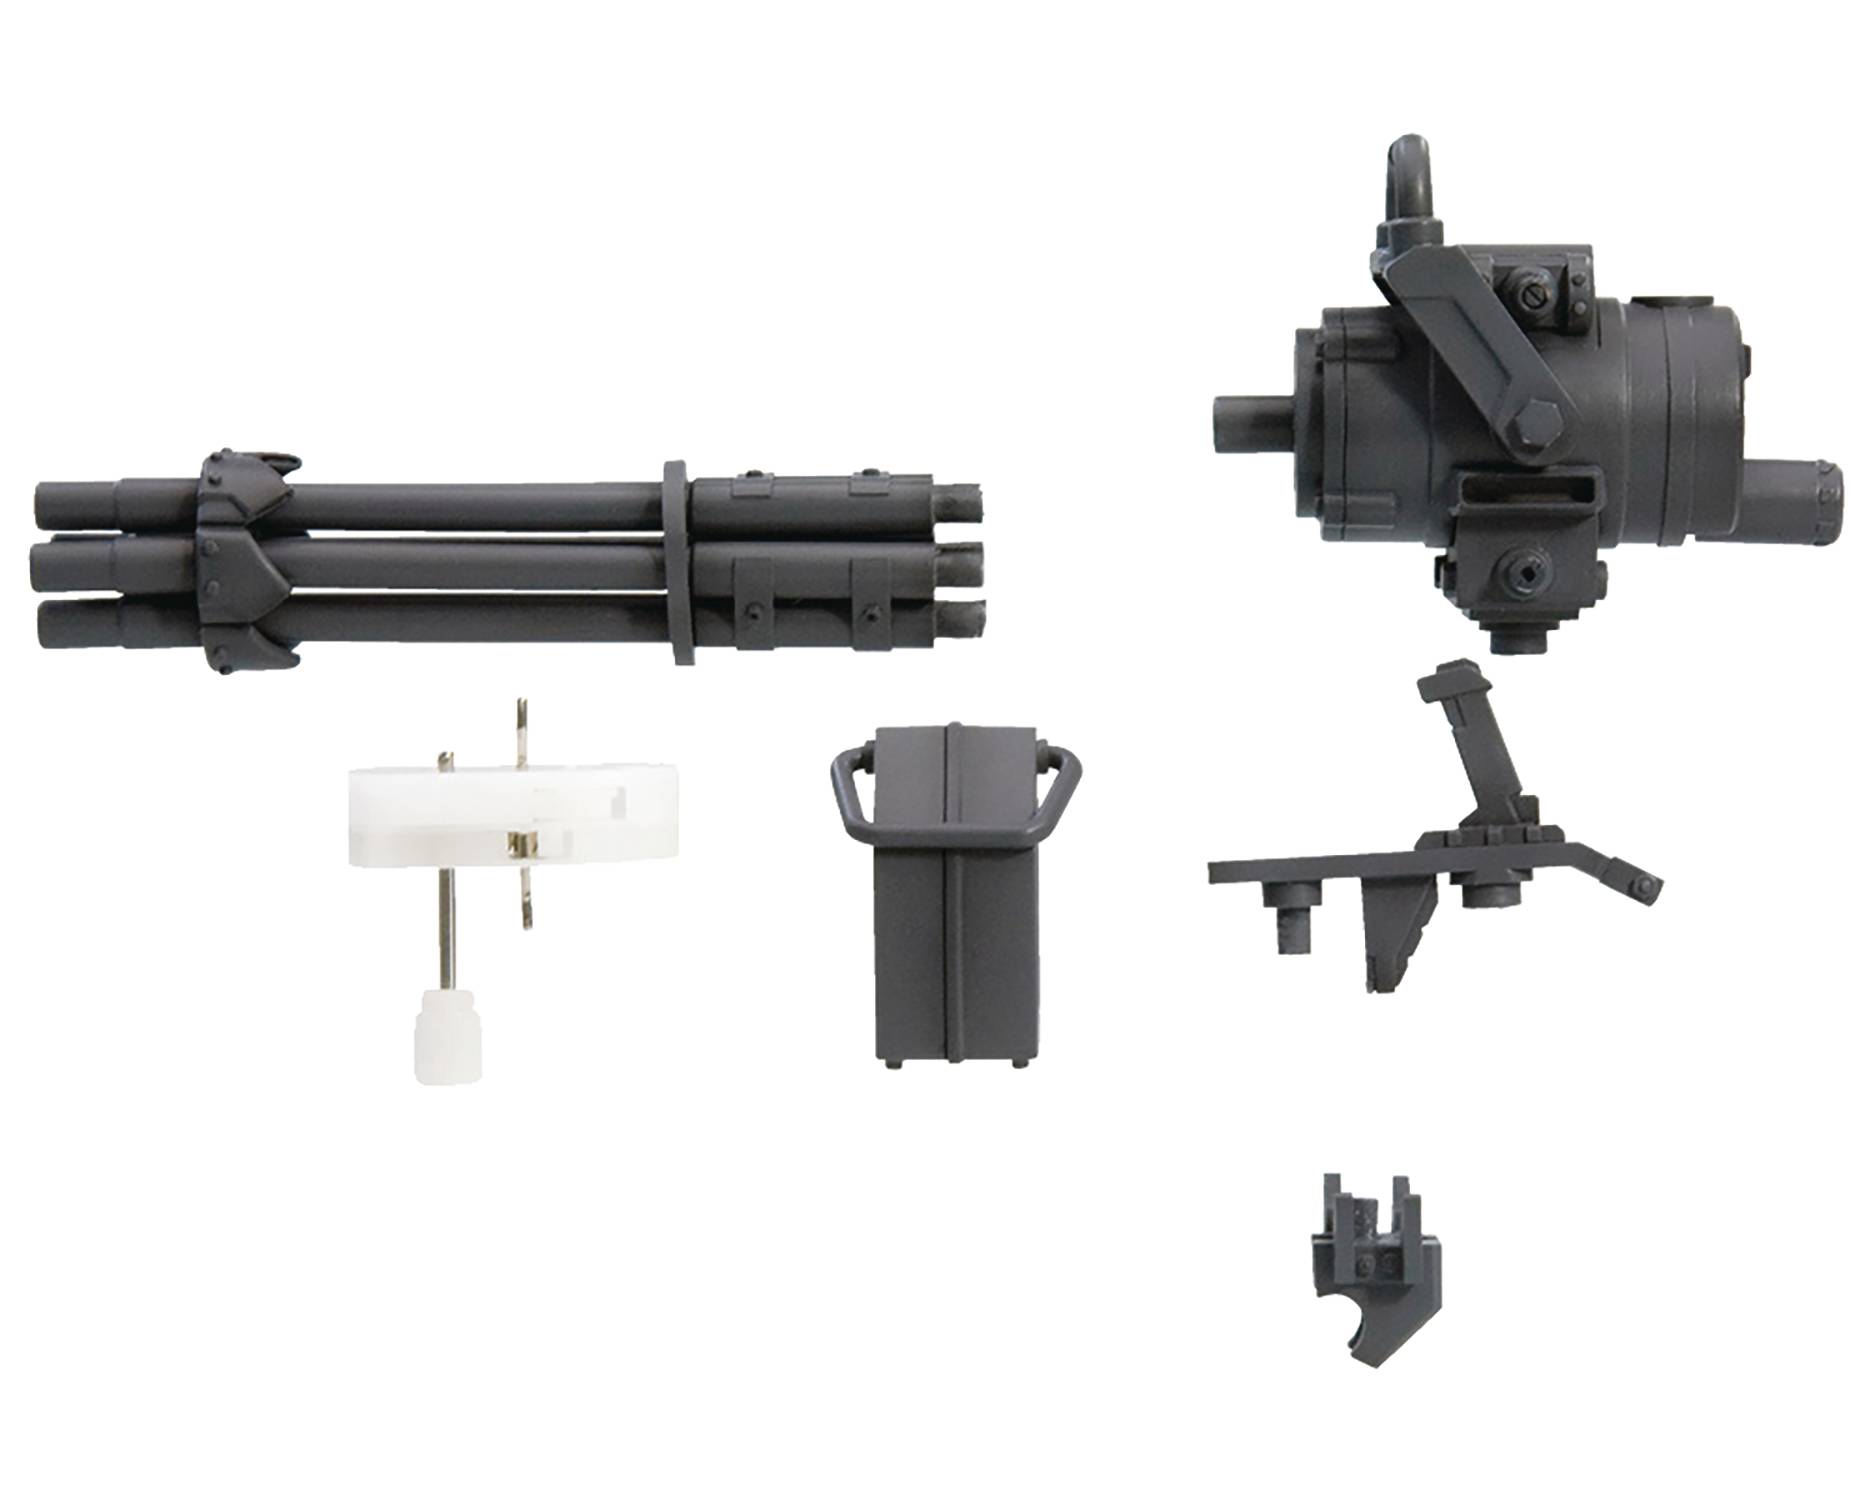 Toys Gun model 209. Σiwalker модель: g43s. Gatling 2388-105. 20 юнитов